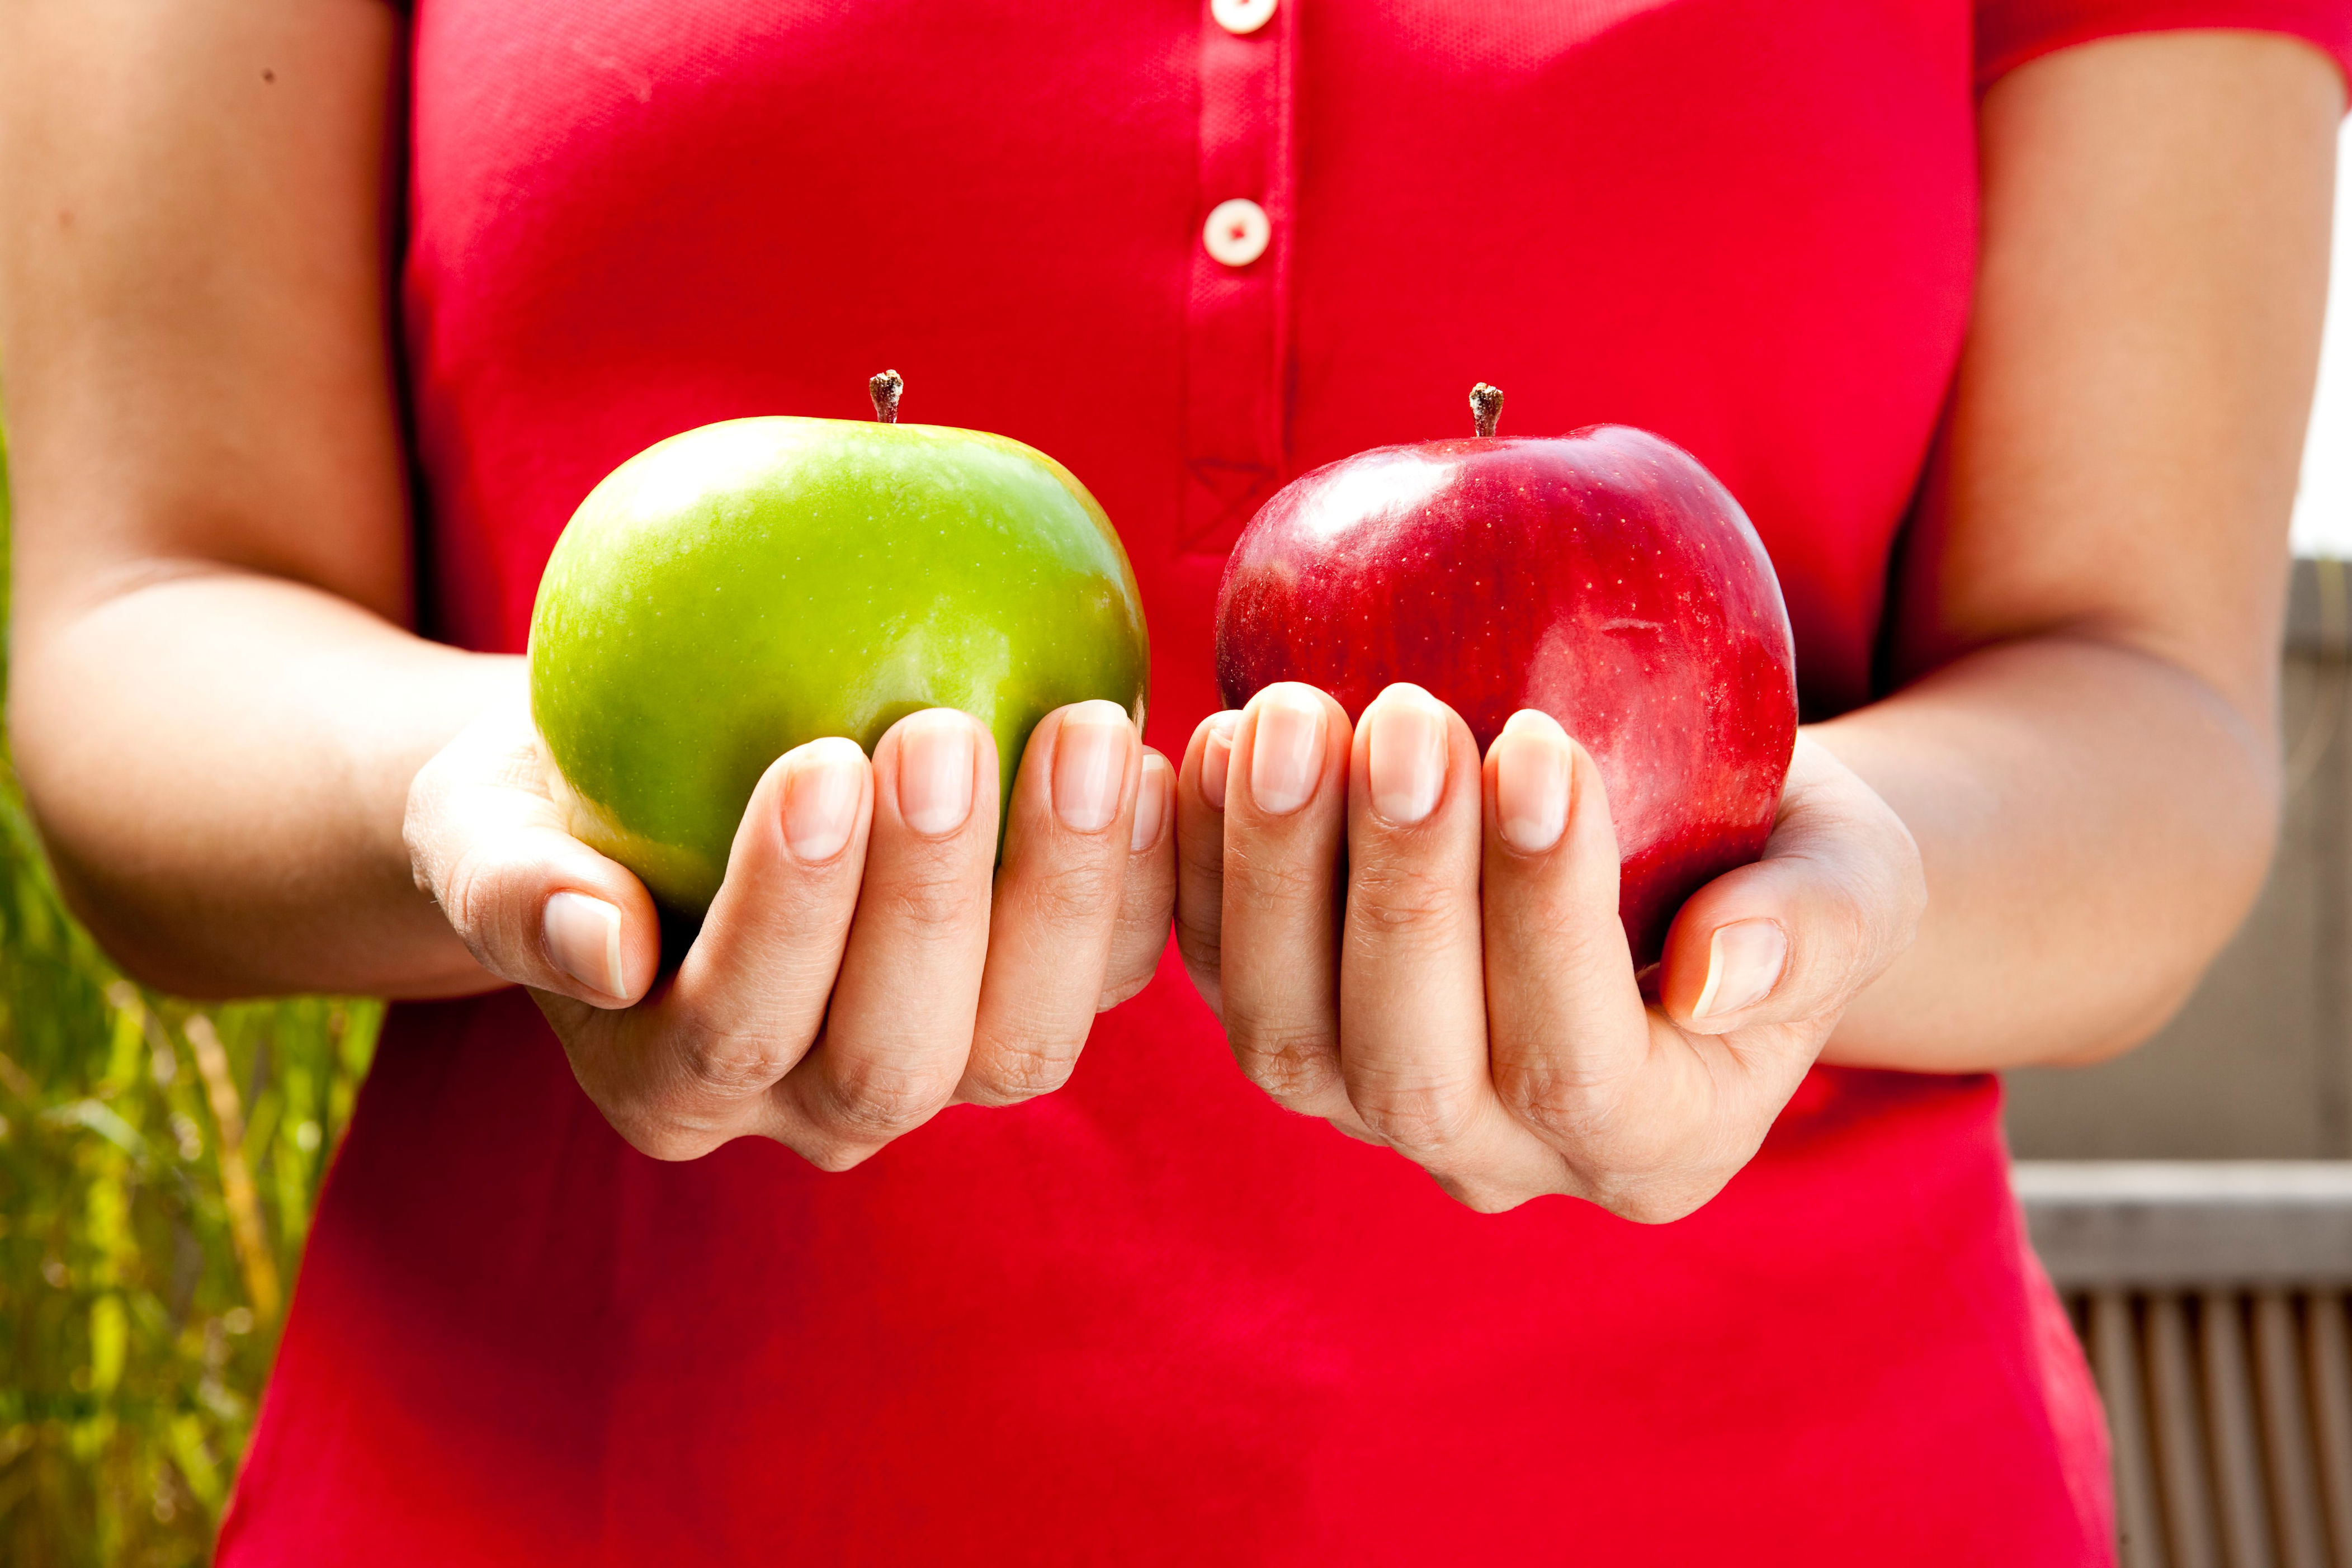 Кинуть яблоко. Яблоко в руке. Яблоки красные. Фрукты в руках. Два яблока в руках.